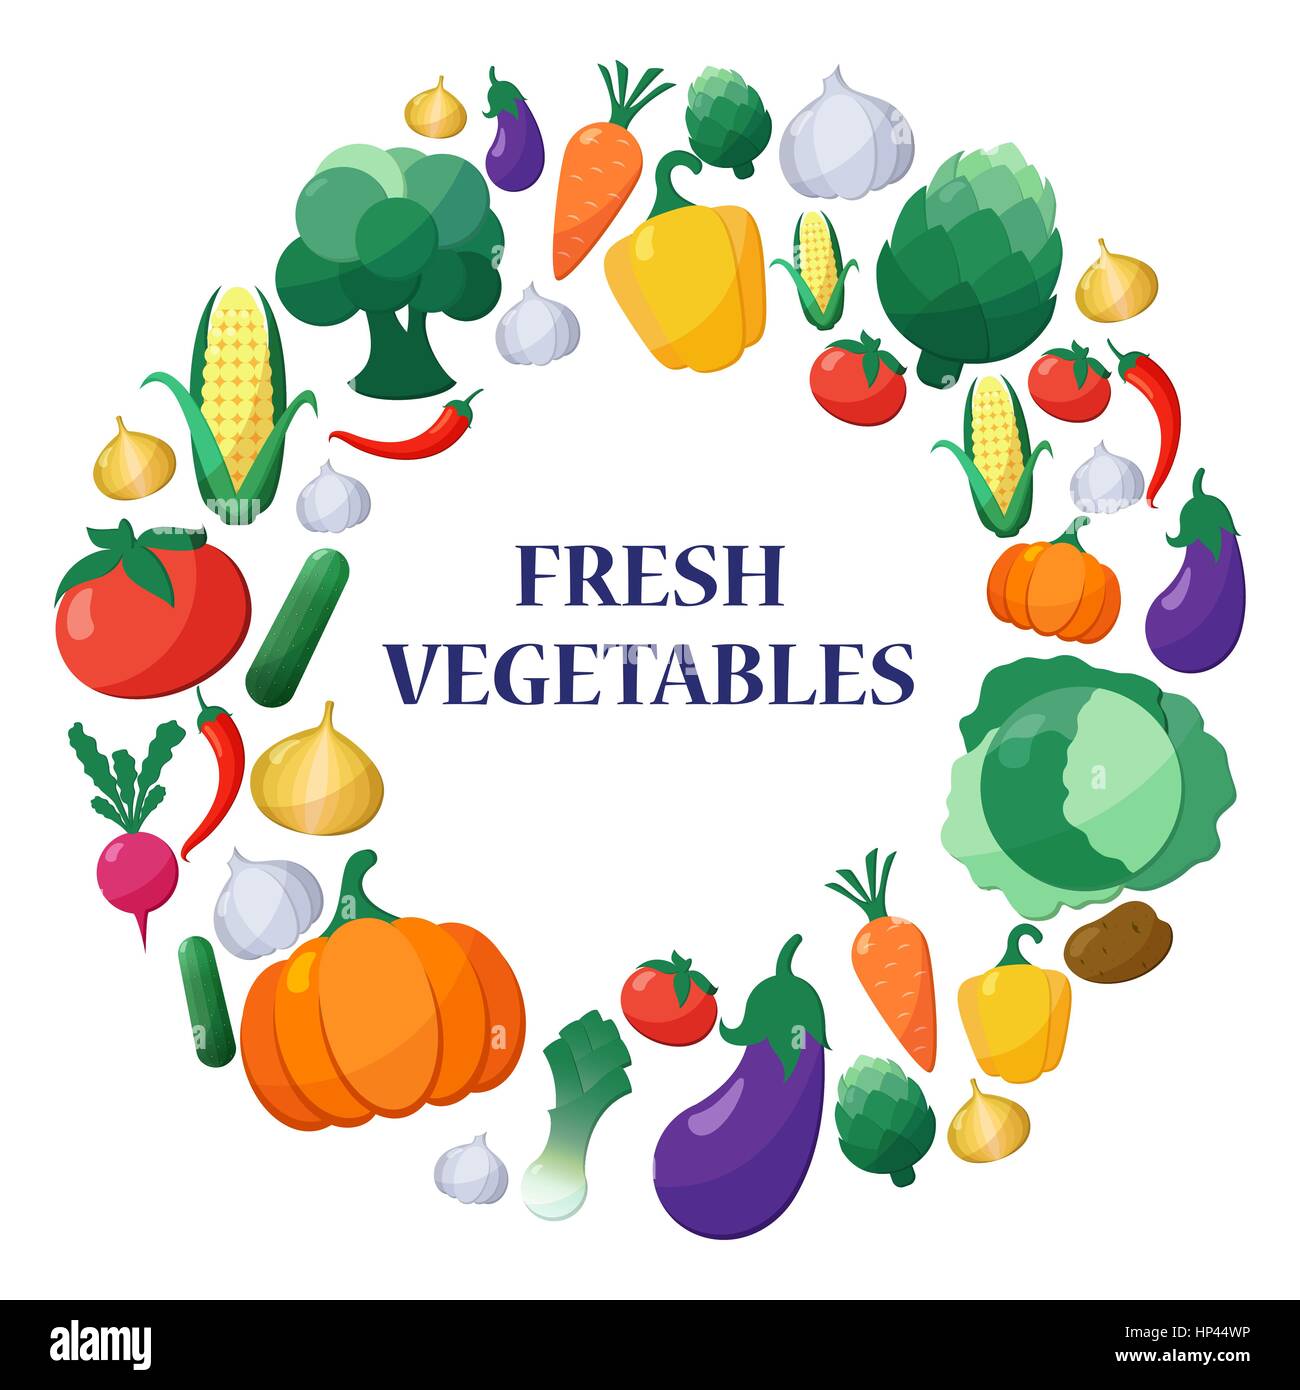 Télévision en légumes Style vecteur forme du cercle à l'aubergine, la carotte, paprika, artichaut, maïs, radis, potiron, pomme de terre, poireau, poivre, l'oignon, le brocoli, Illustration de Vecteur